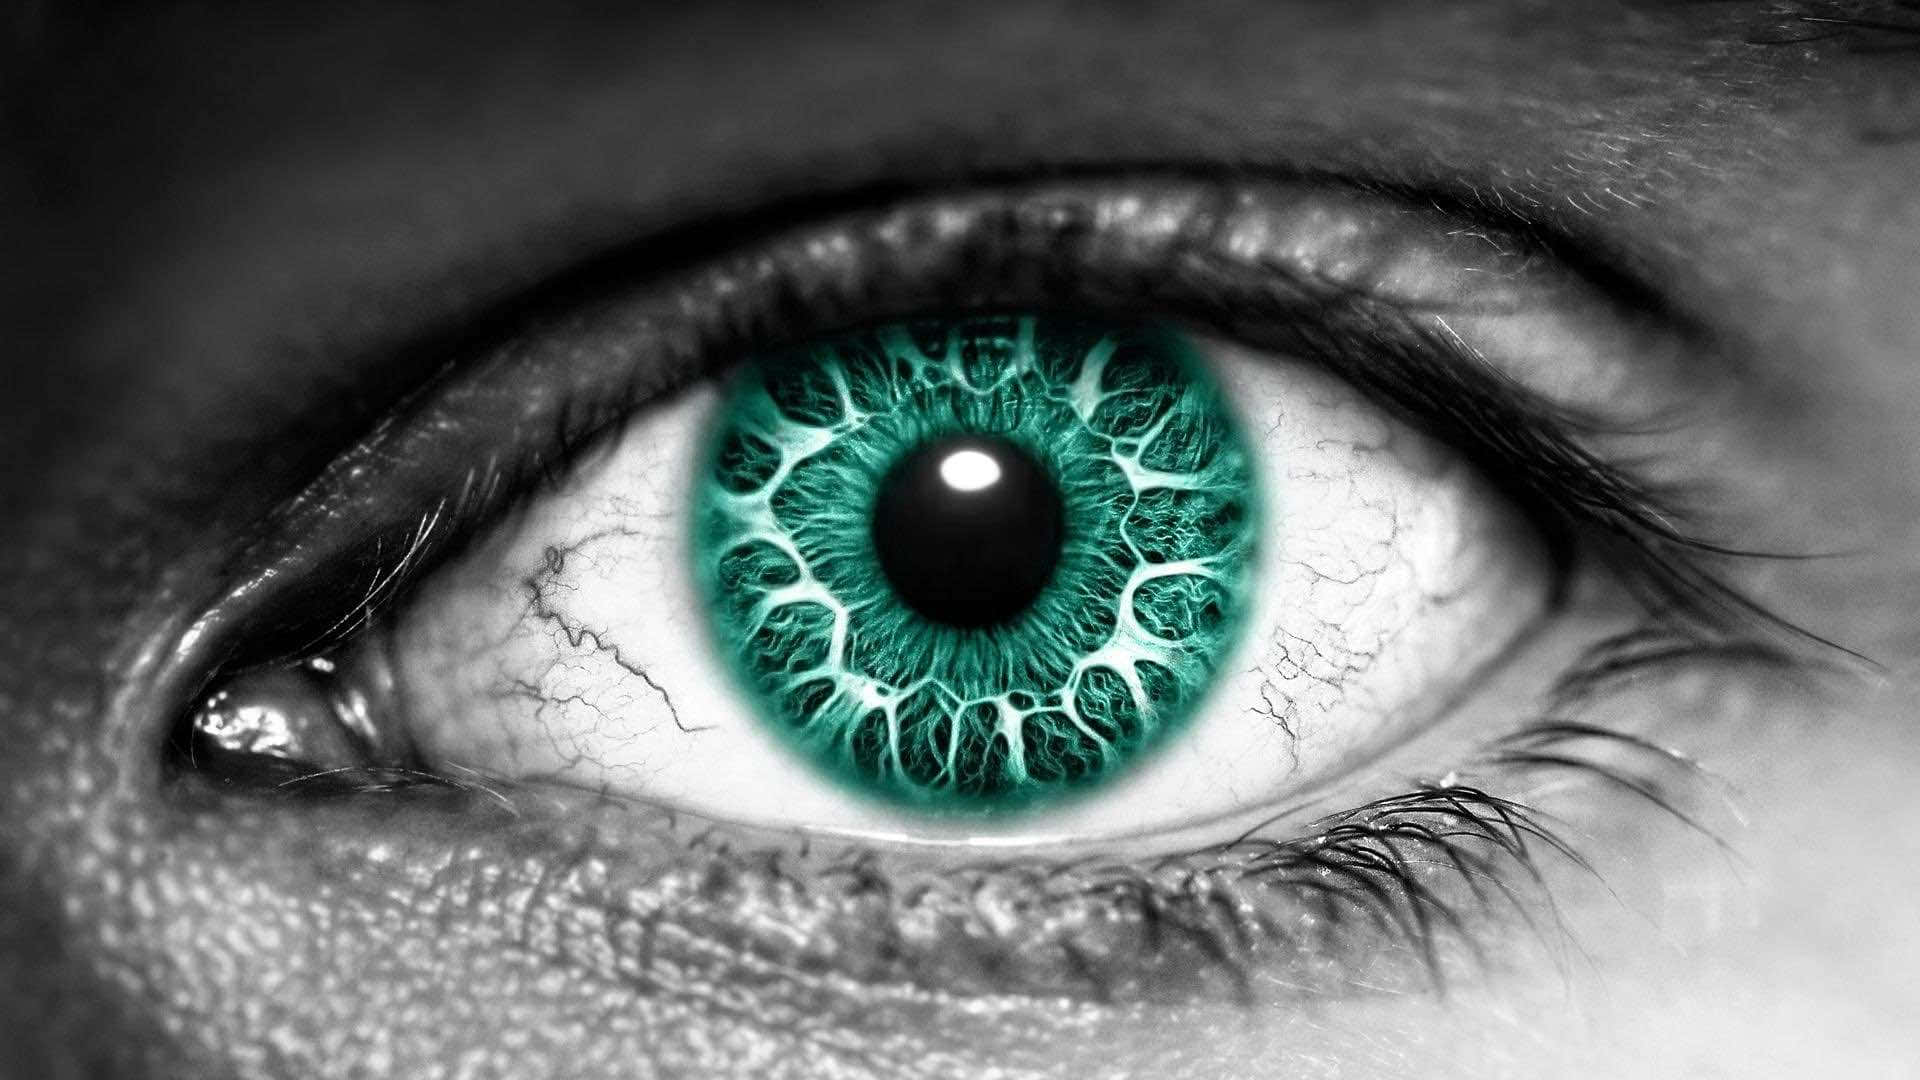 a close up of a green eye Wallpaper